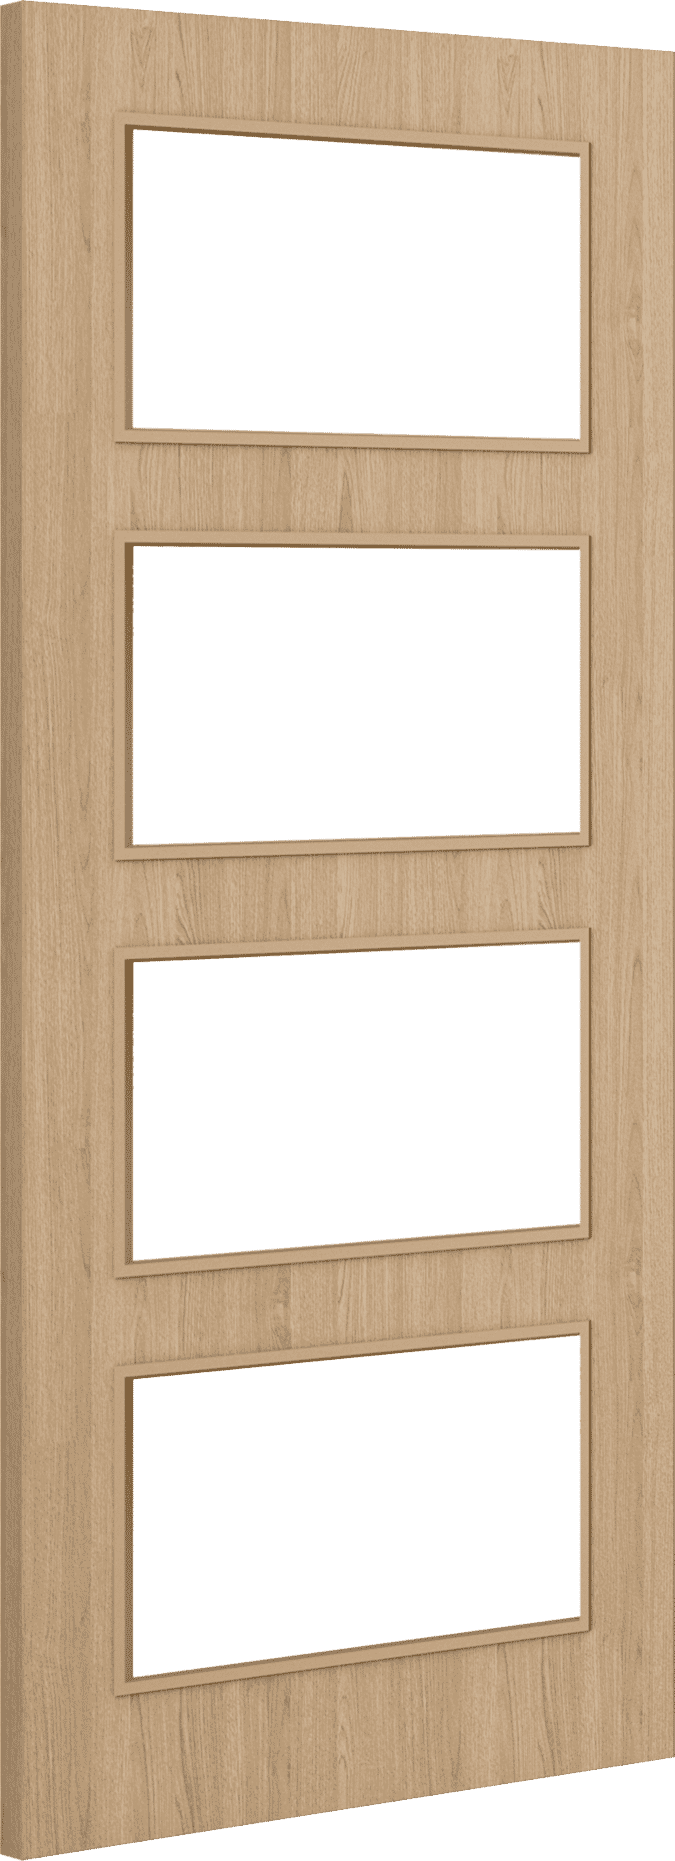 2040mm x 726mm x 44mm Architectural Oak 04 Clear Glazed - Prefinished FD30 Fire Door Blank